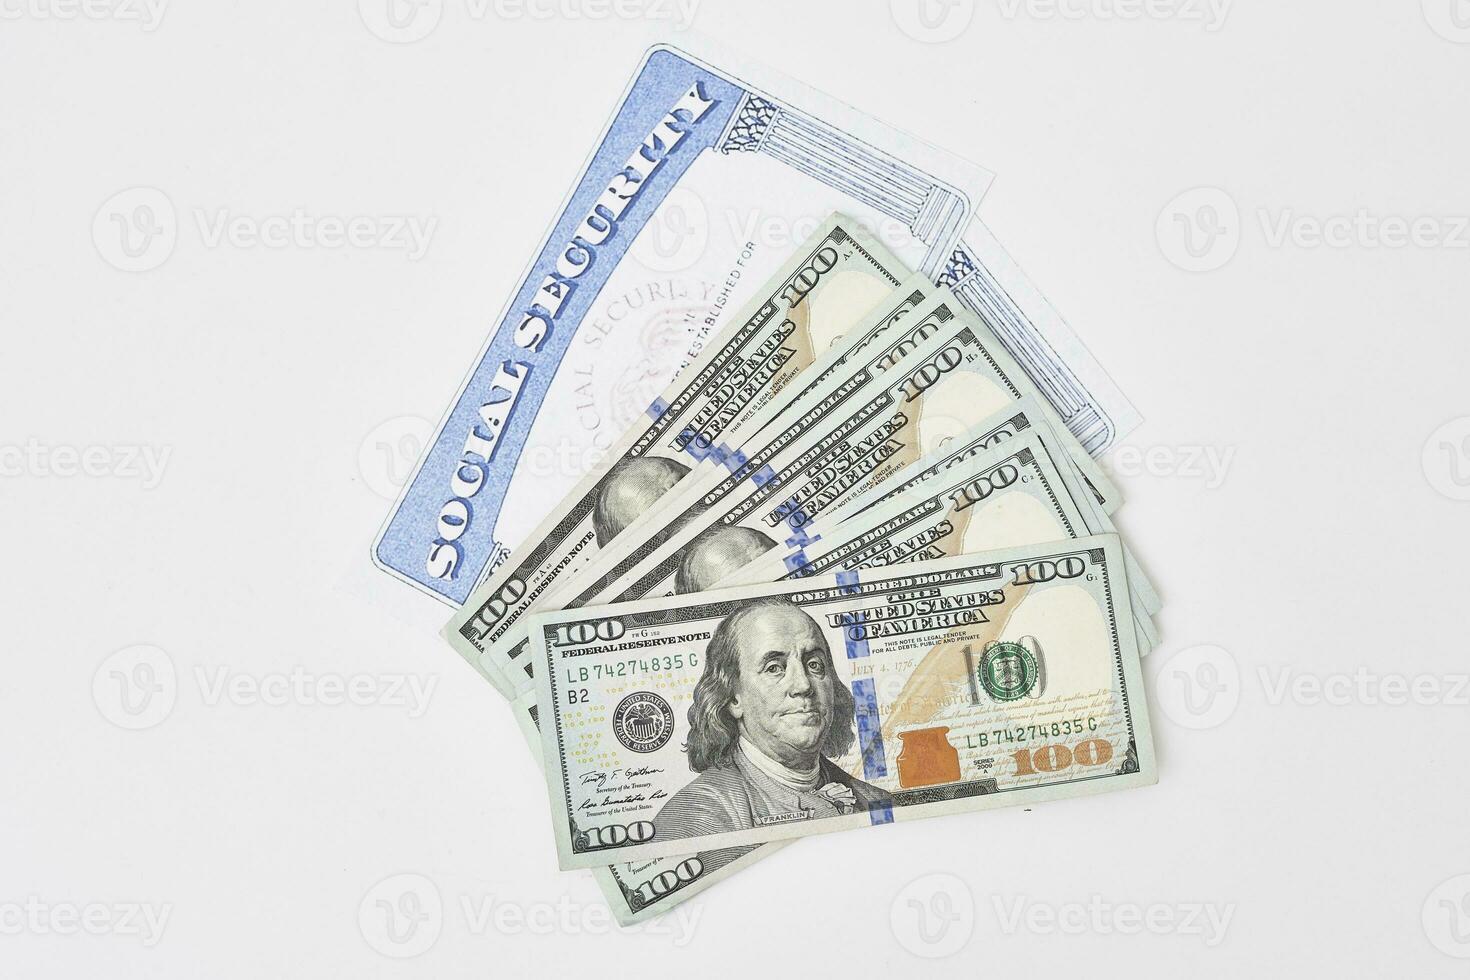 sociale sicurezza carta e noi dollari denaro contante i soldi foto